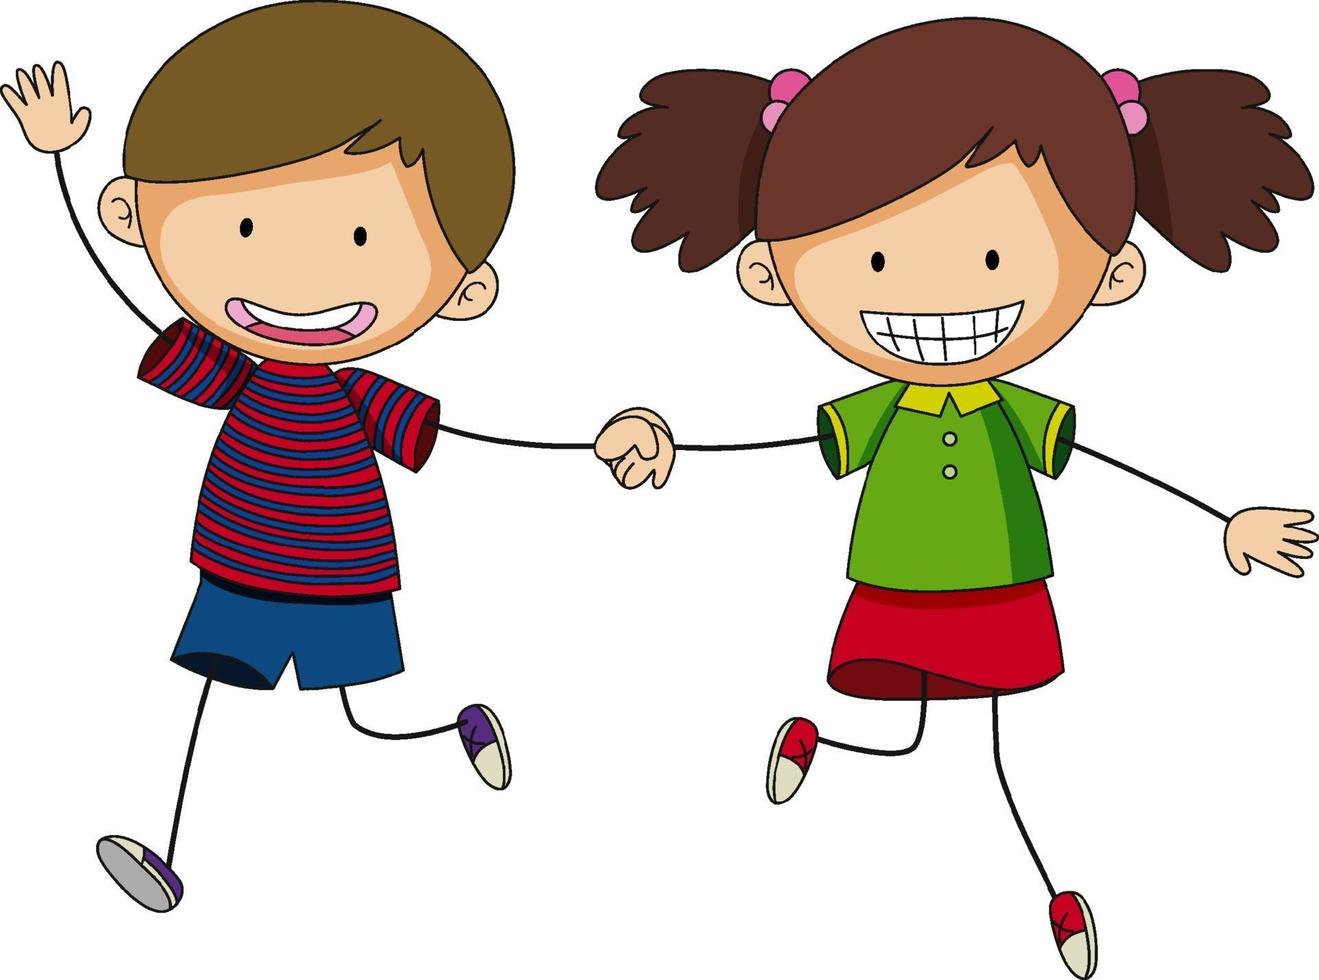 twee kinderen hand in hand cartoon karakter hand getrokken doodle stijl geïsoleerd vector